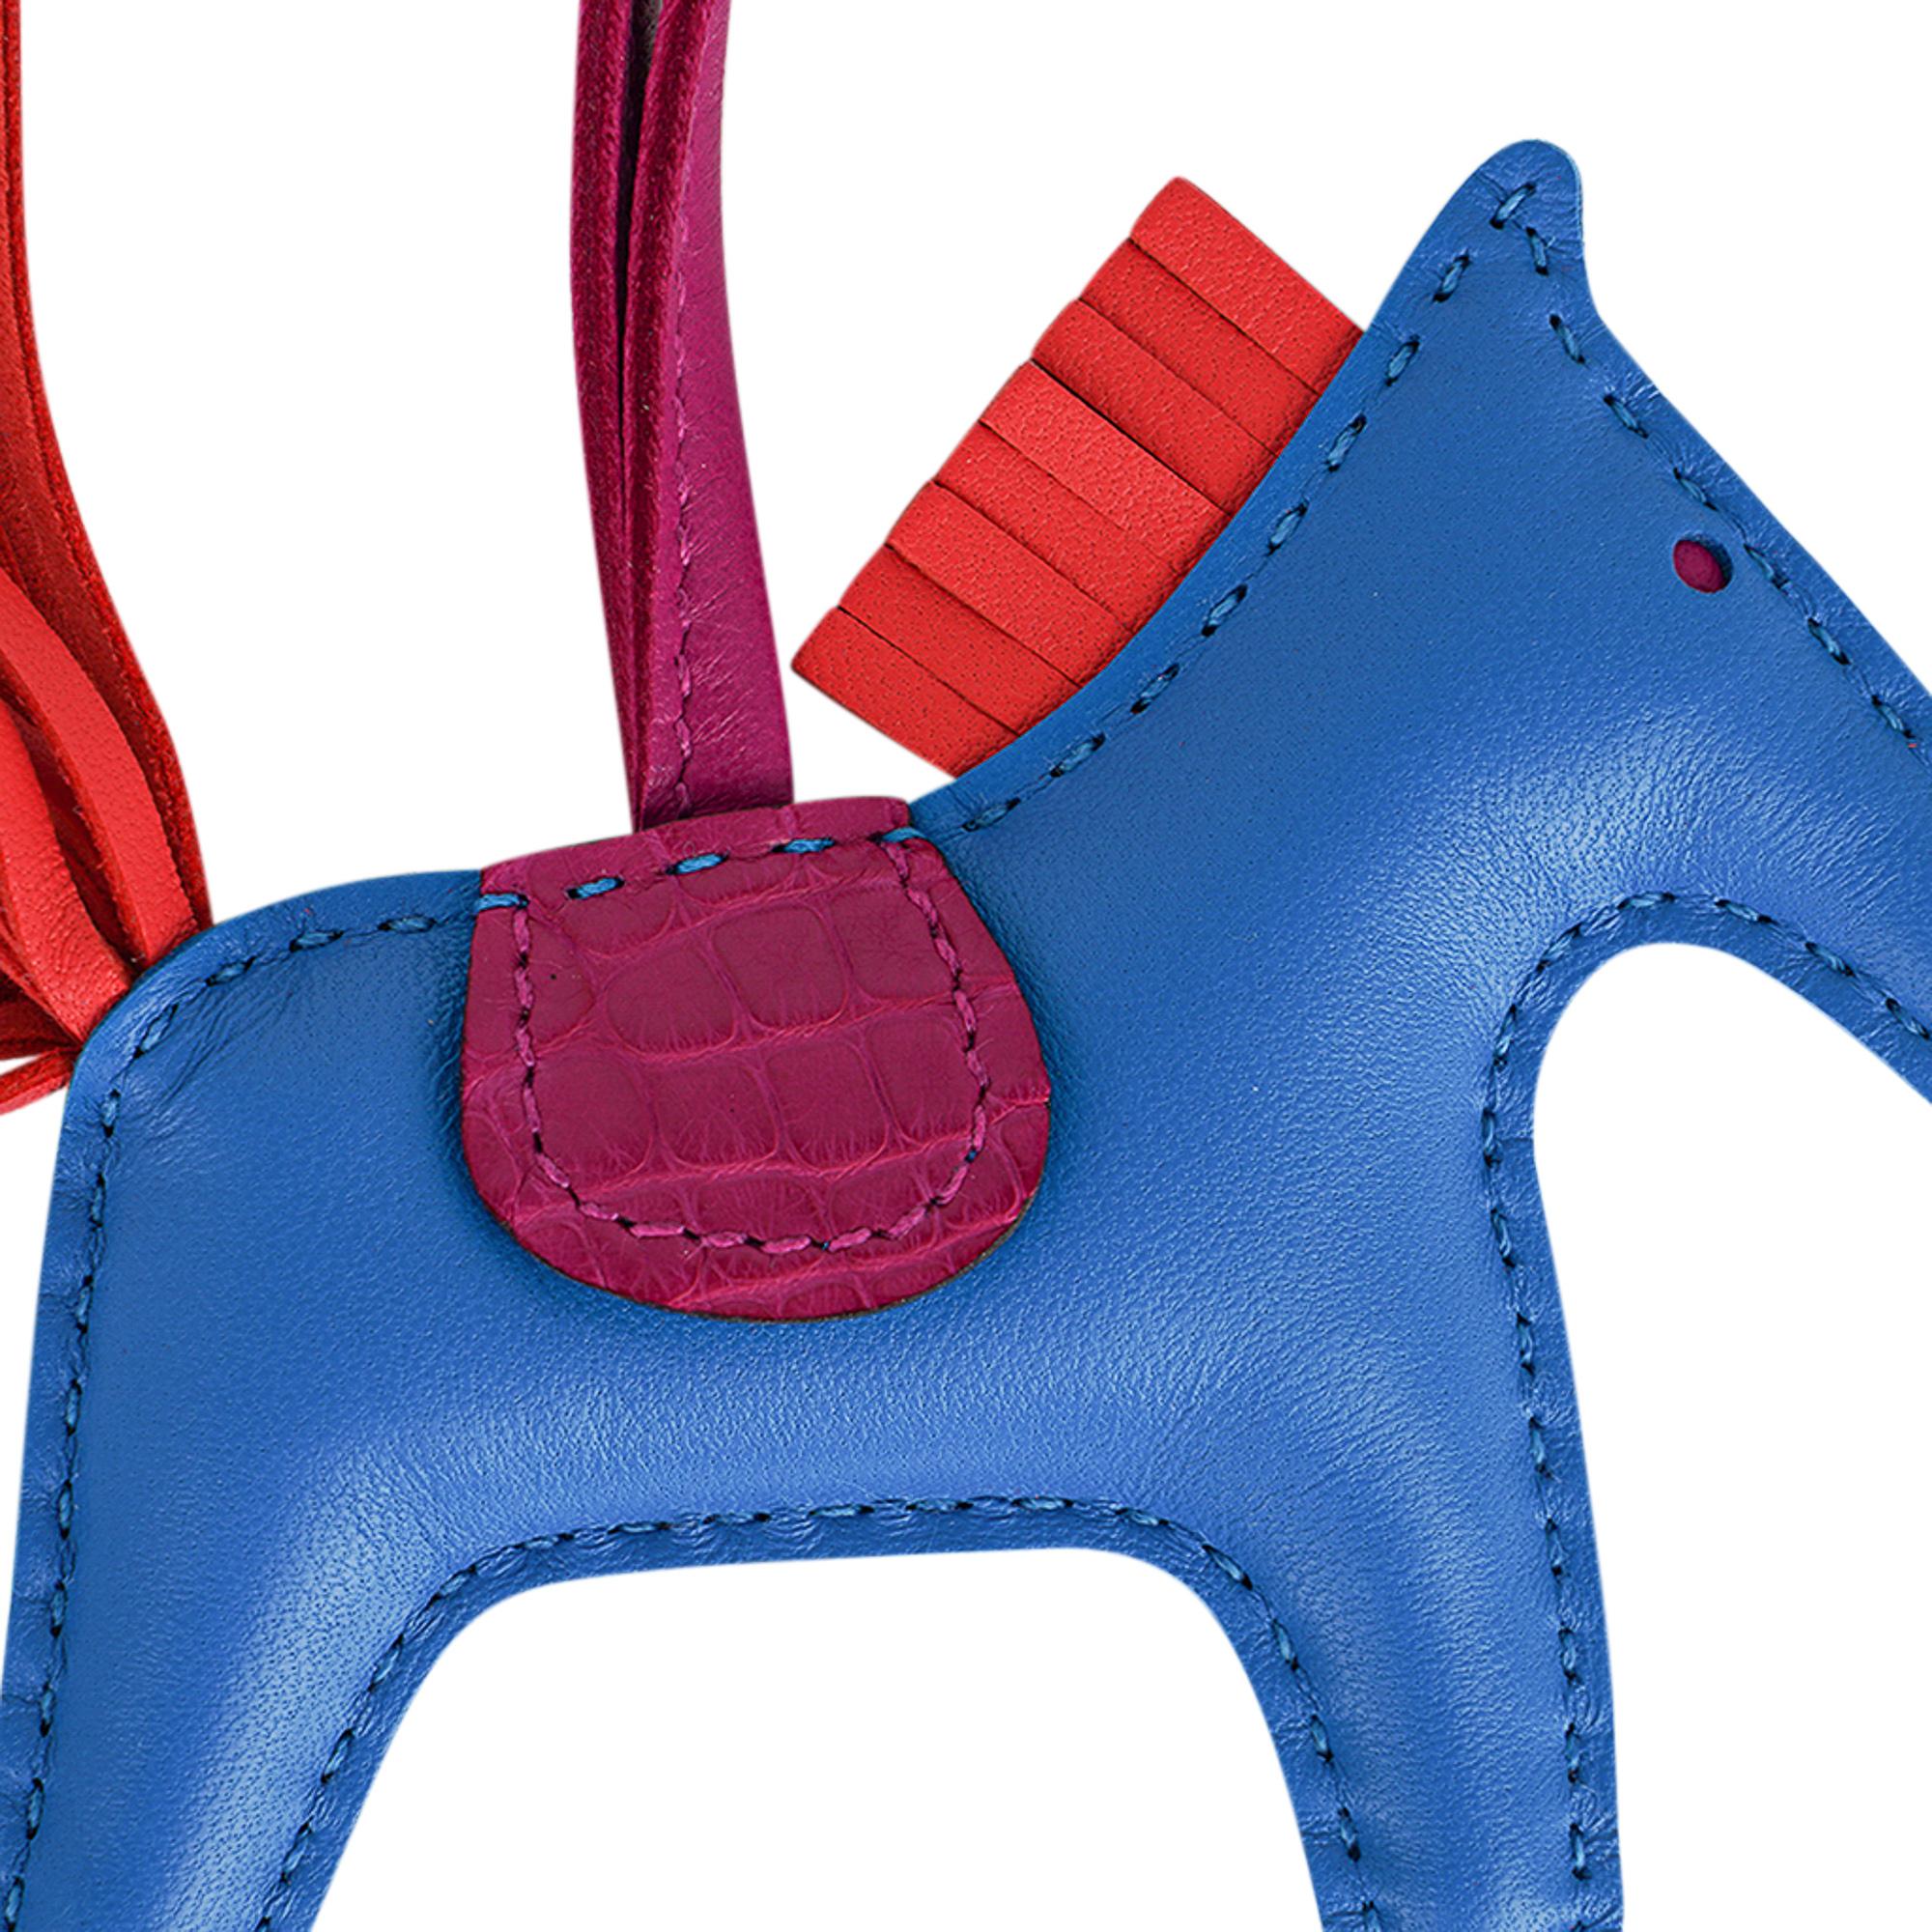 Mightychic propose une breloque de sac Hermès Rodeo Touch PM en édition limitée, présentée dans le film
Alligator mat Bleu Zanzibar, Orange Poppy et Rose Scheherazade.
Charmante et enjouée, elle s'intègre facilement à une myriade de couleurs de sacs